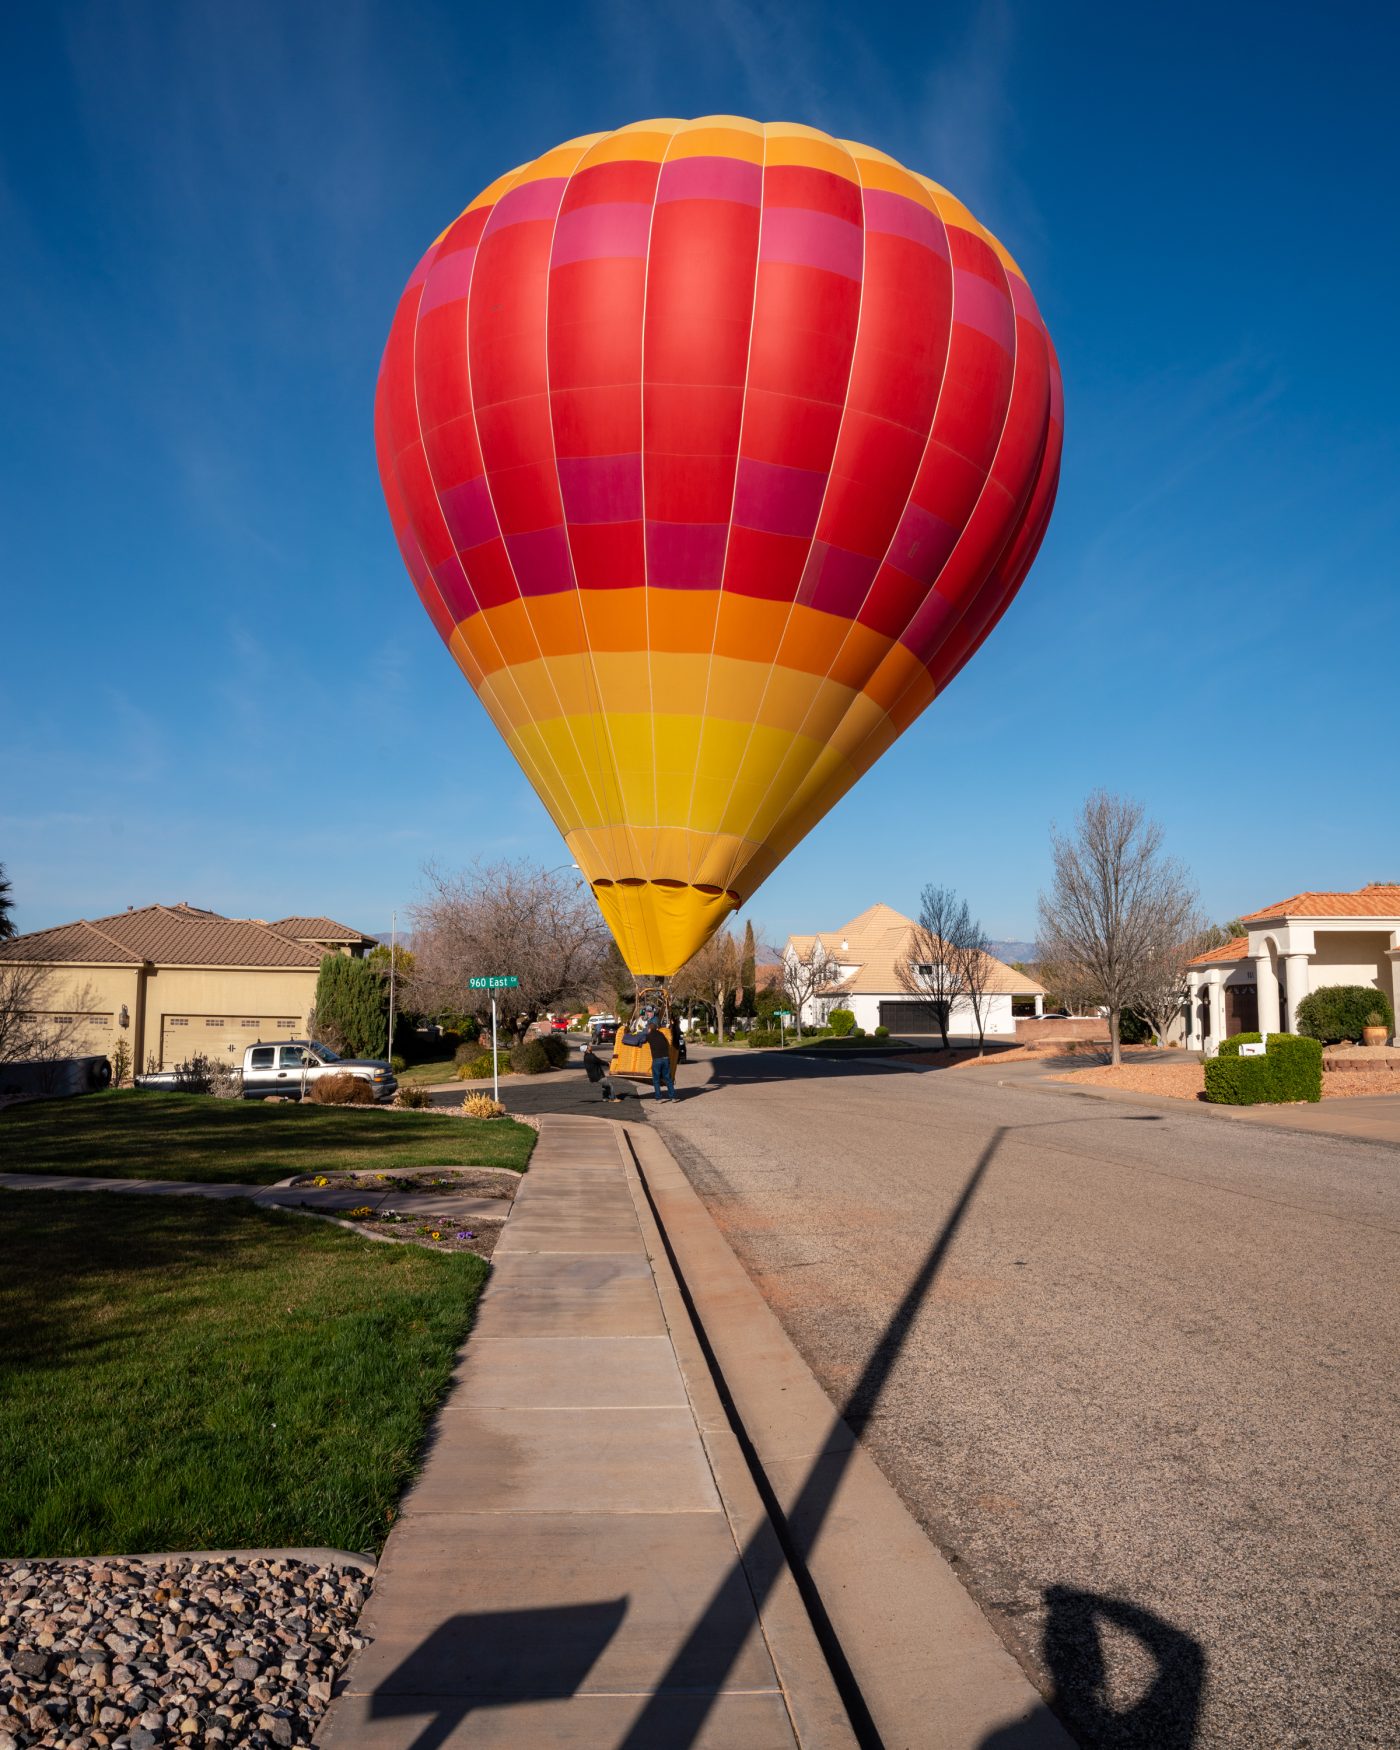 Palledin Hot Air Balloon Ride - St. George, Utah